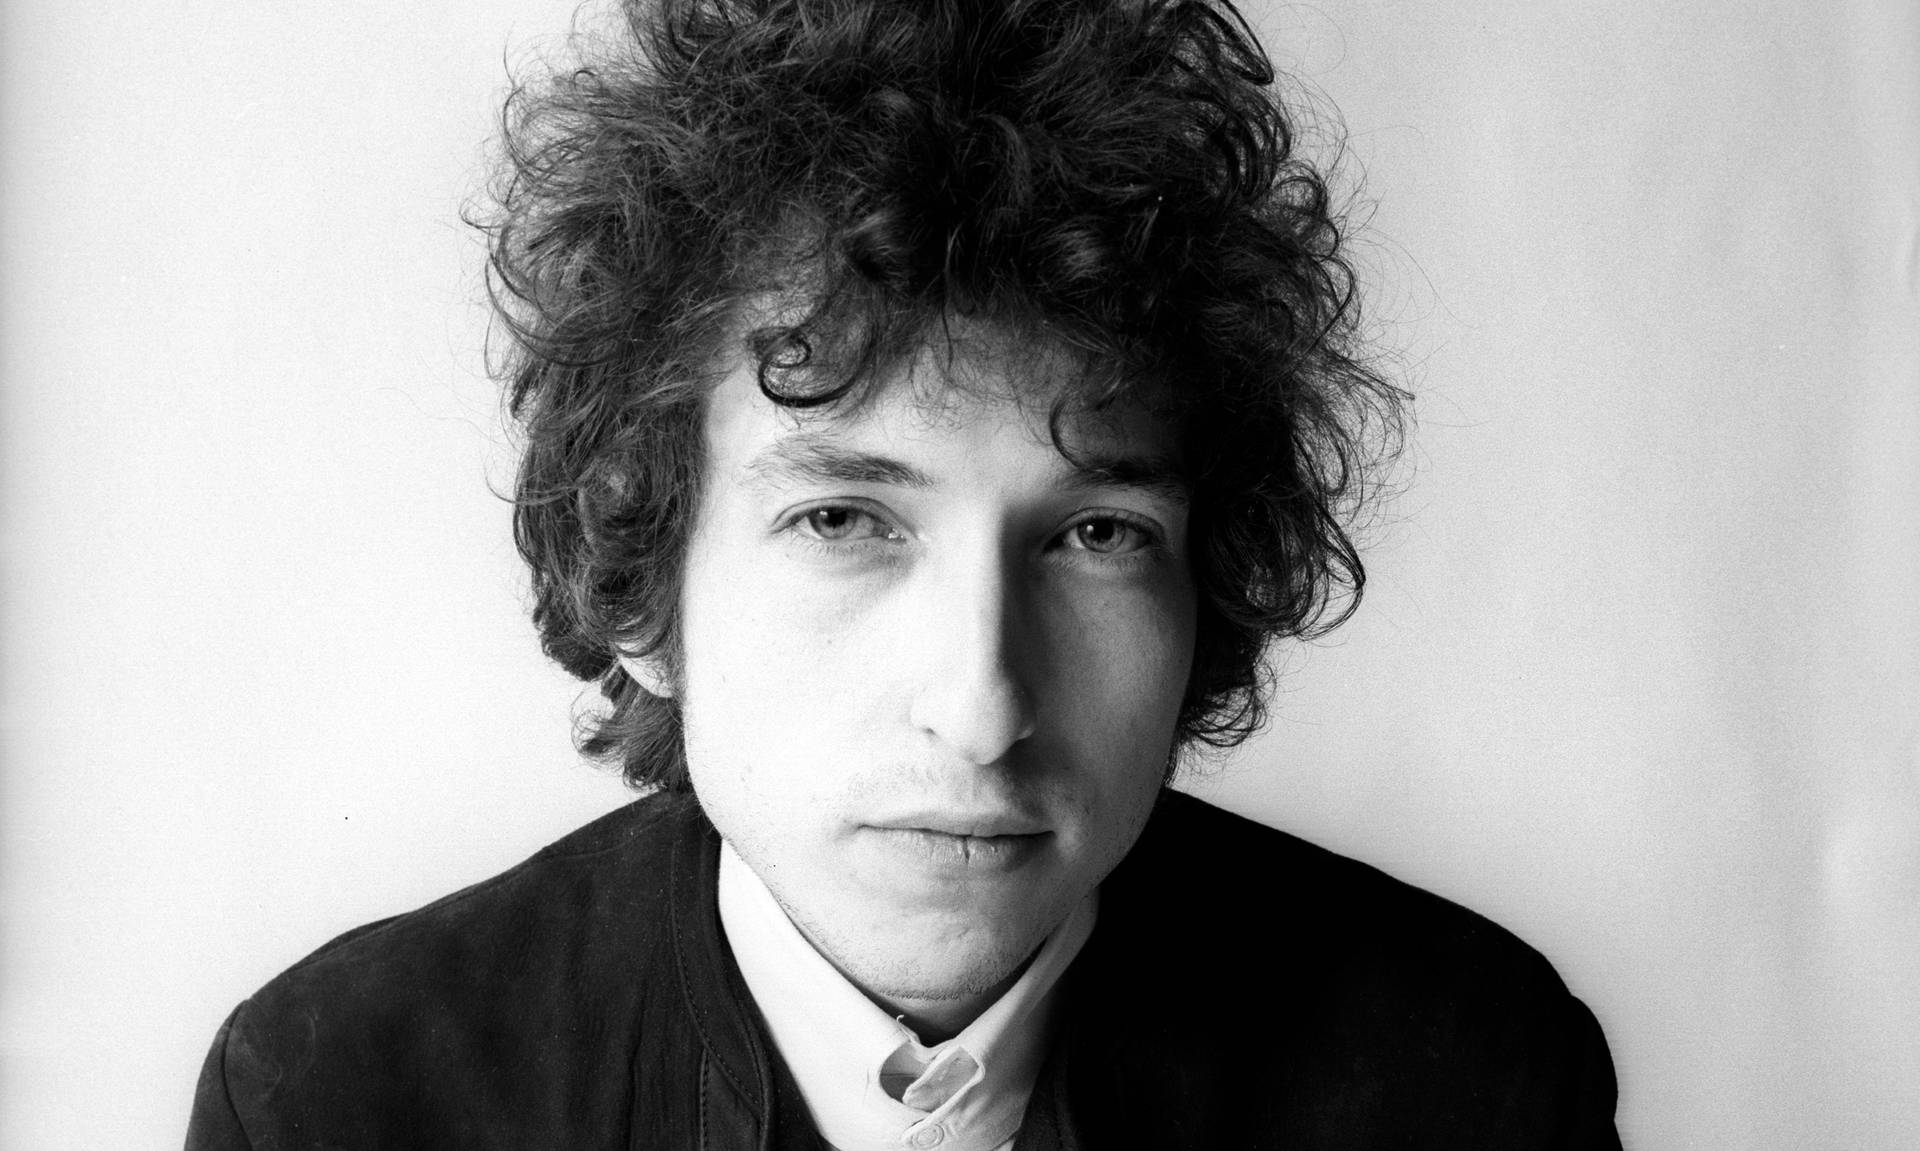 Iconicoritratto In Bianco E Nero Del Celebre Musicista Bob Dylan. Sfondo